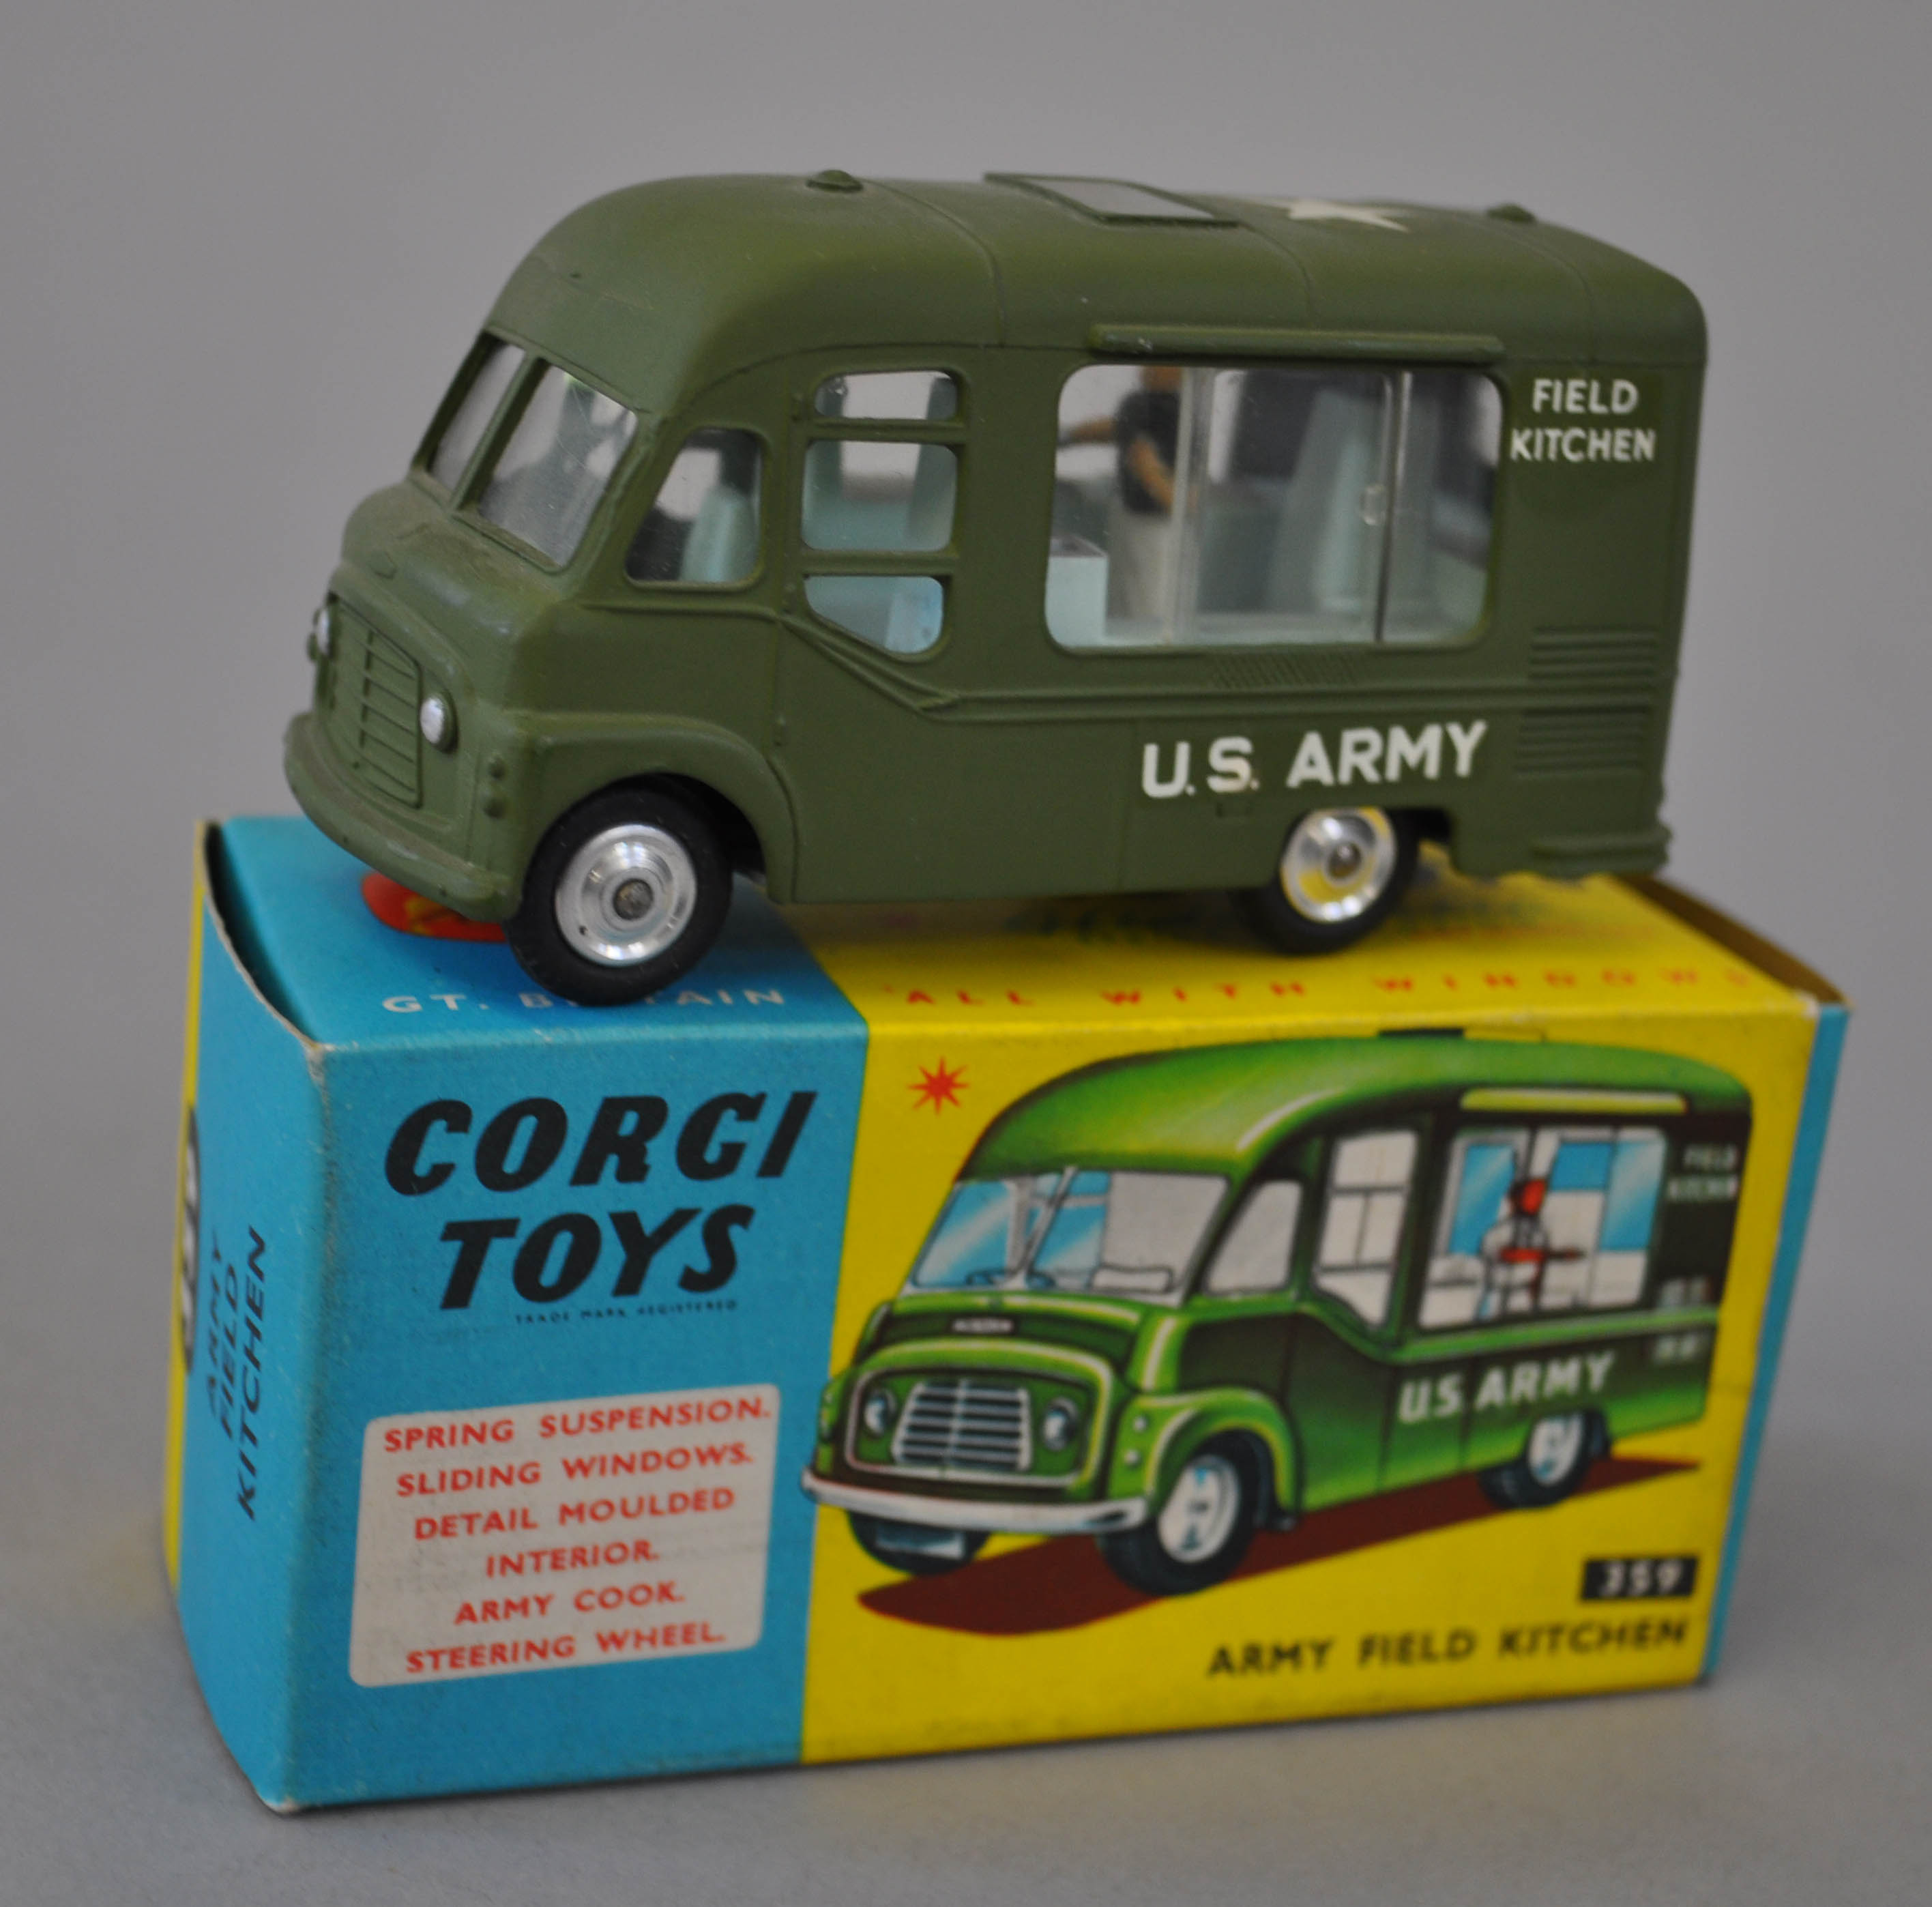 Corgi Toys 359 Smith`s Karrier Van Army Field Kitchen. VG in VG box with Corgi club leaflet.